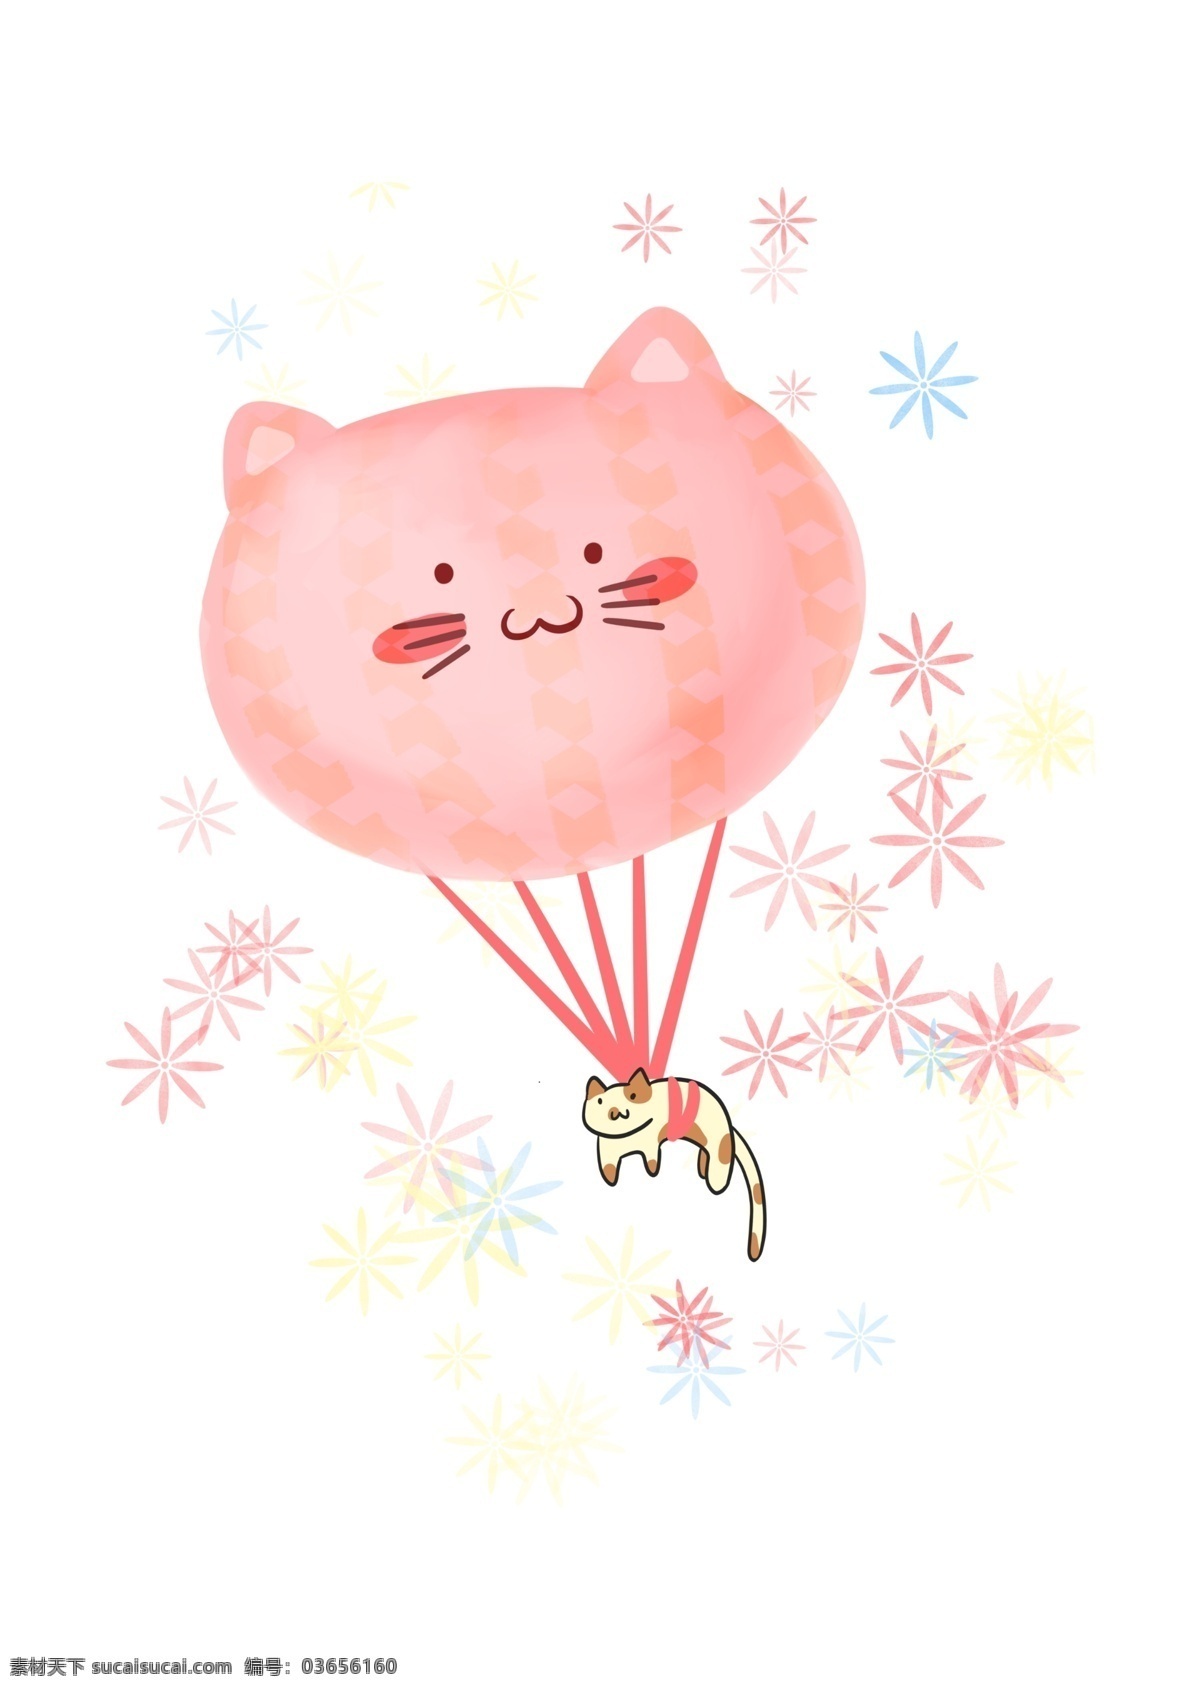 猫咪 可爱 漂浮 热气球 动物 猫 粉色 气球 篮子 梦幻 童趣 简约 起飞 卡通气球 天空 飞翔